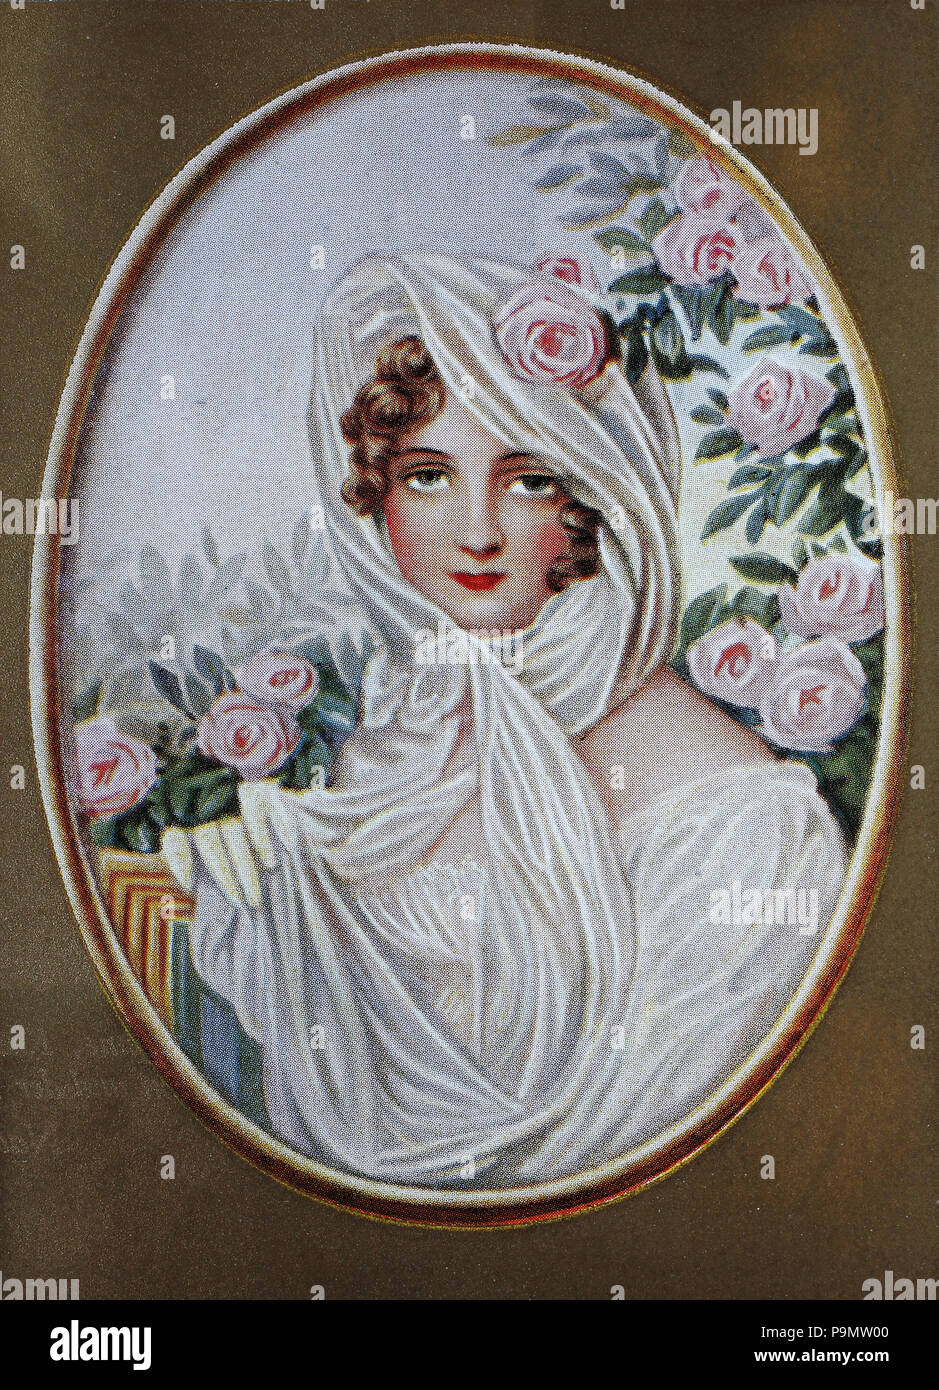 Prinzessin Katharina Bagration, Skavronskaya, 7. Dezember 1783 - vom 21. Mai 1857 bzw. 2. Juni 1857, war eine russische Prinzessin, digital verbesserte Reproduktion einer Vorlage drucken aus dem Jahr 1900 Stockfoto